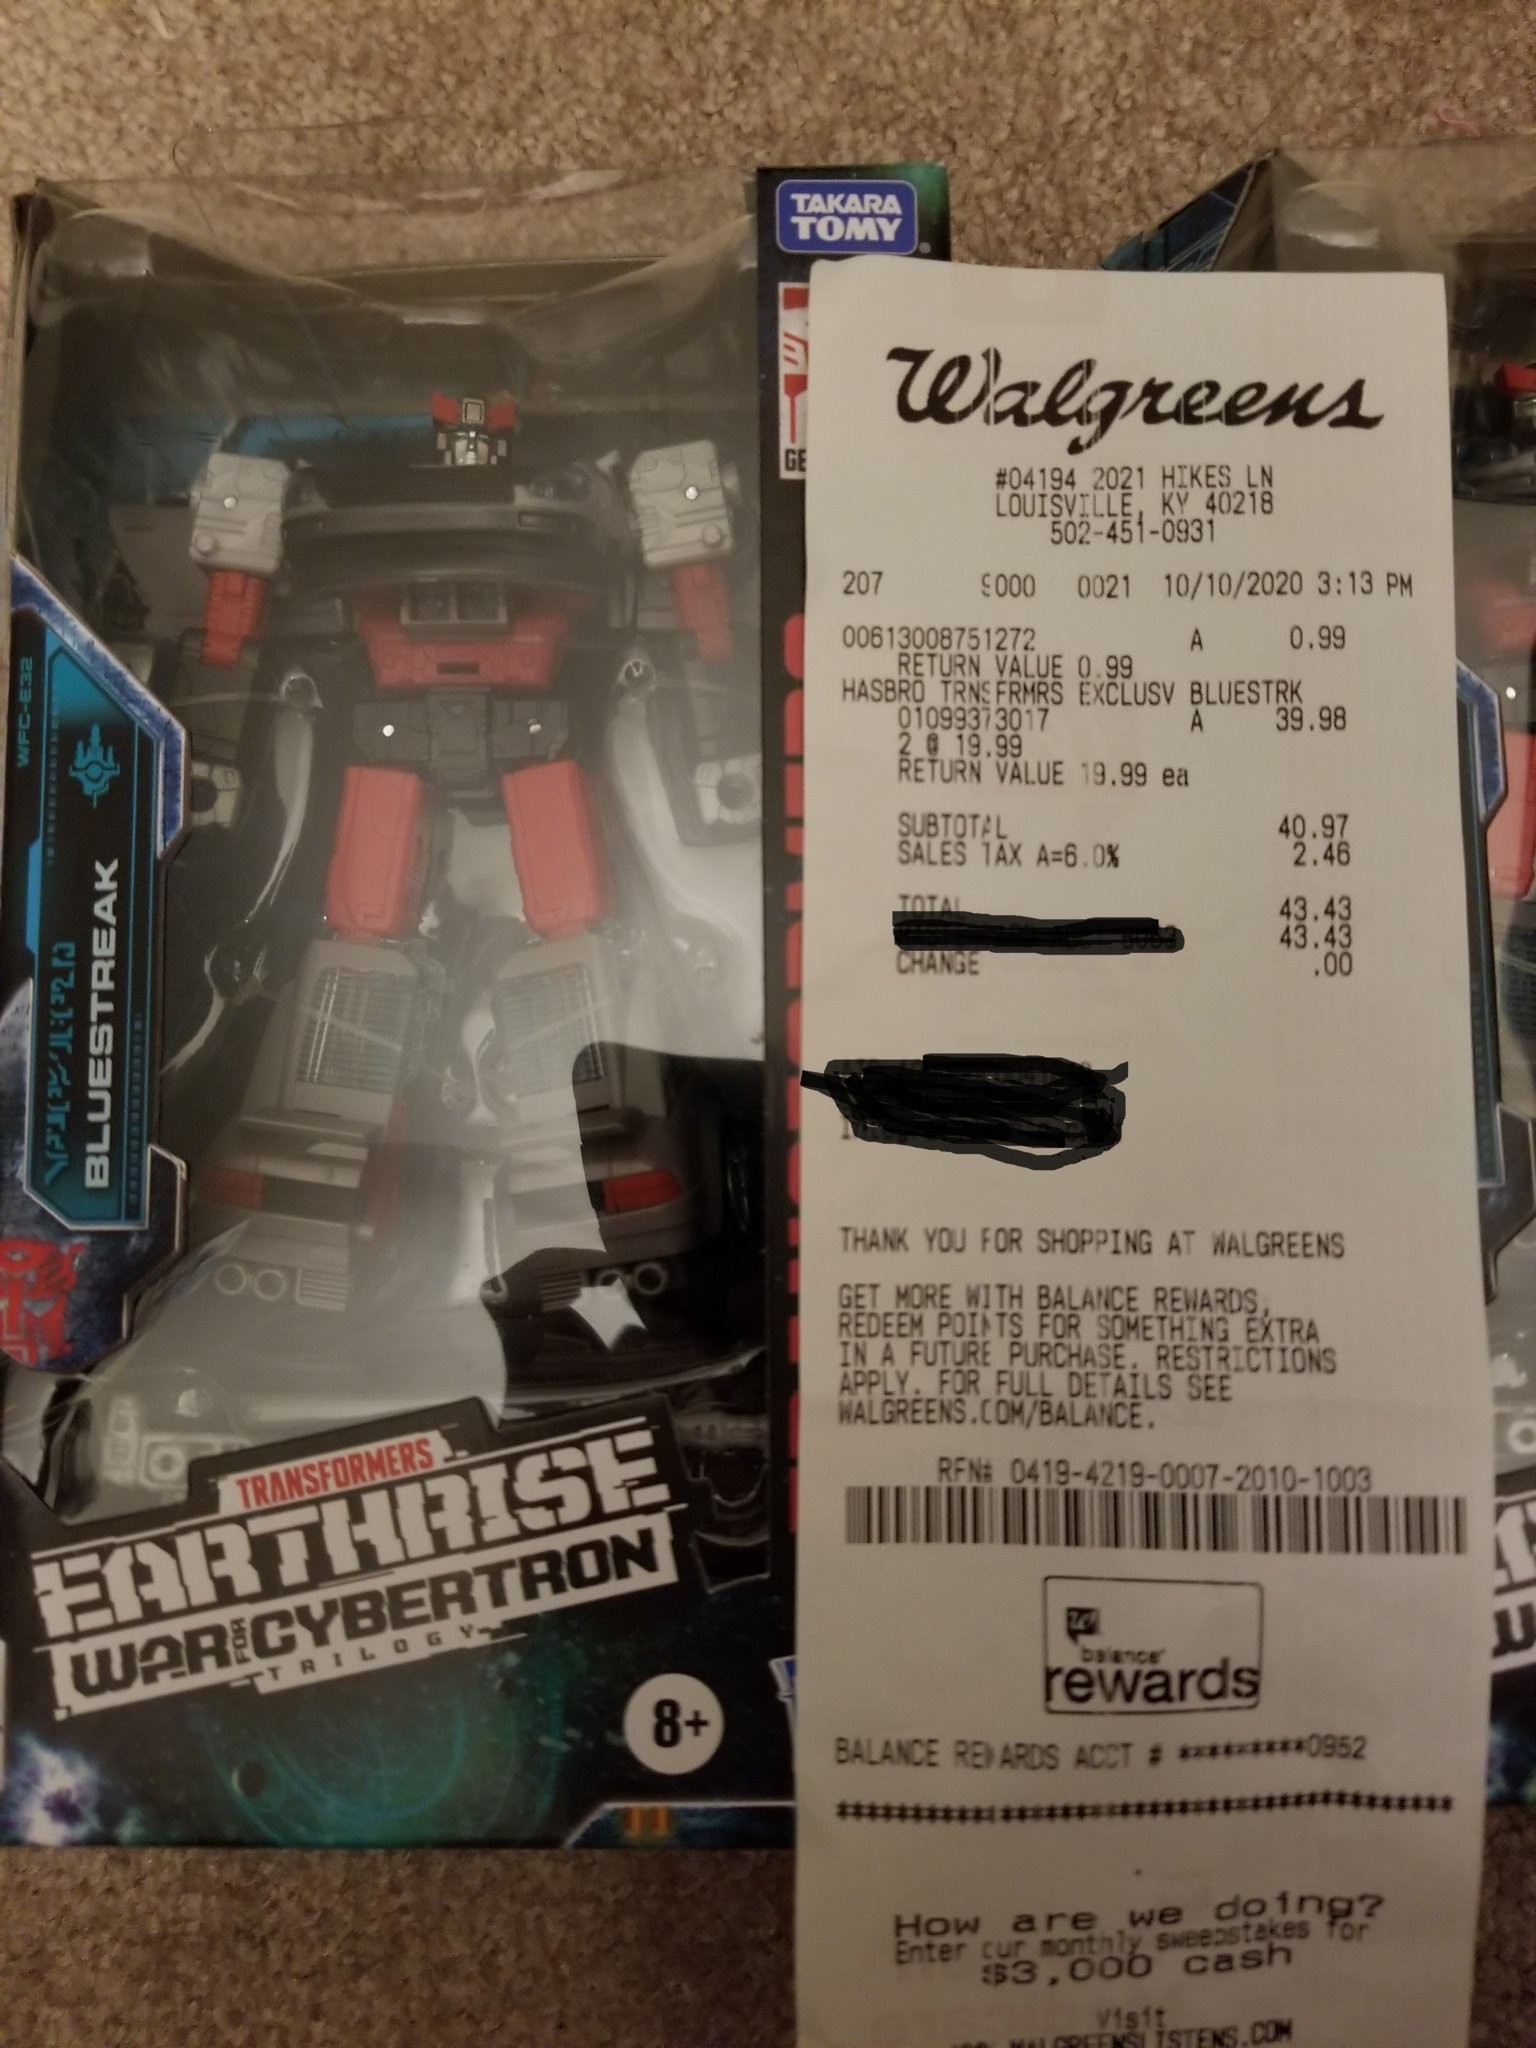 Transformers Earthrise War for Cybertron Deluxe BlueStreak Walgreens Exclusive 